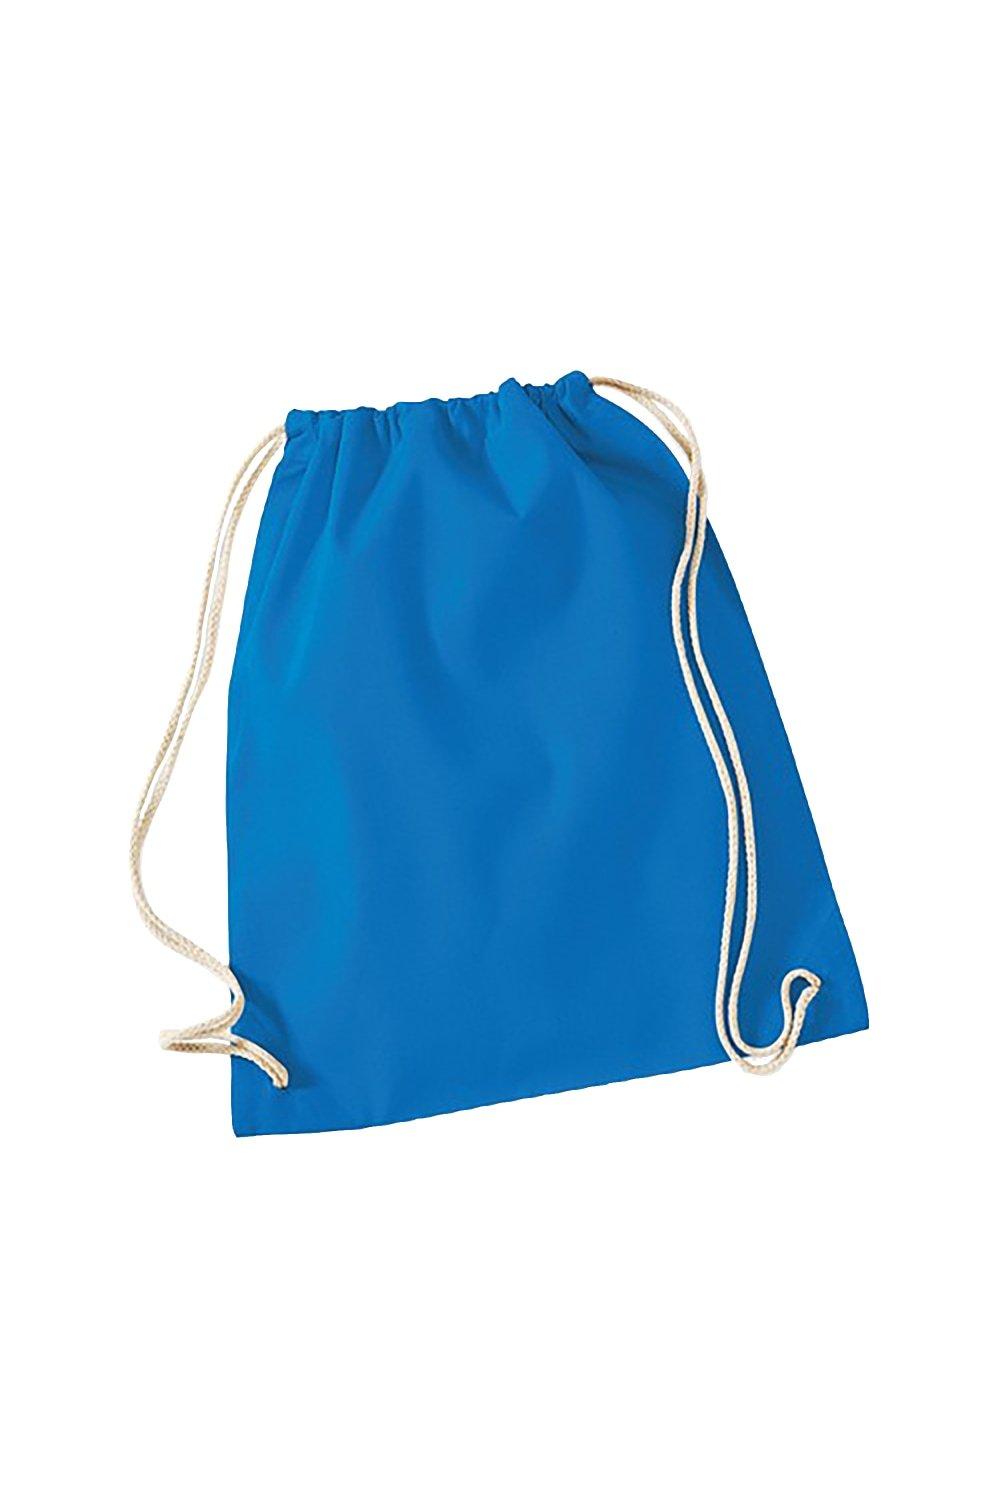 Хлопковая сумка Gymsac - 12 литров (2 шт. в упаковке) Westford Mill, синий